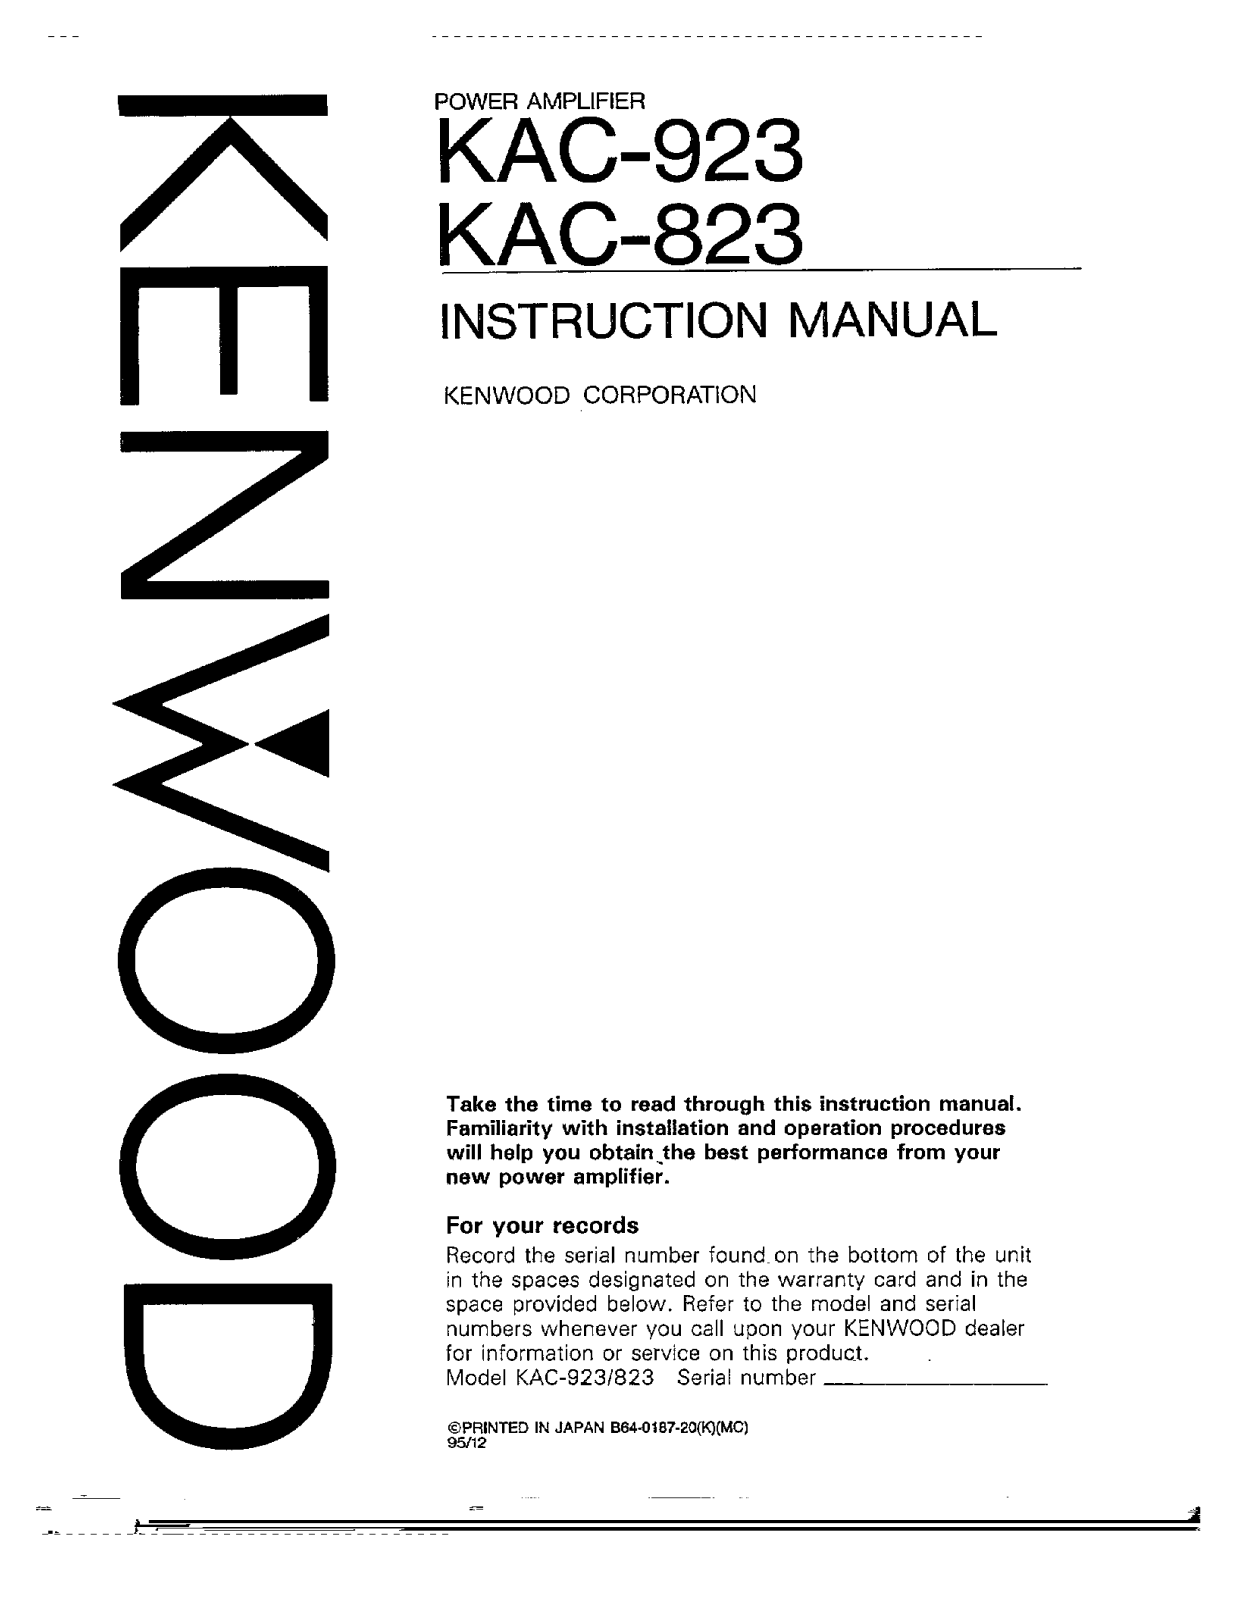 Kenwood KAC-923, KAC-823 Owner's Manual